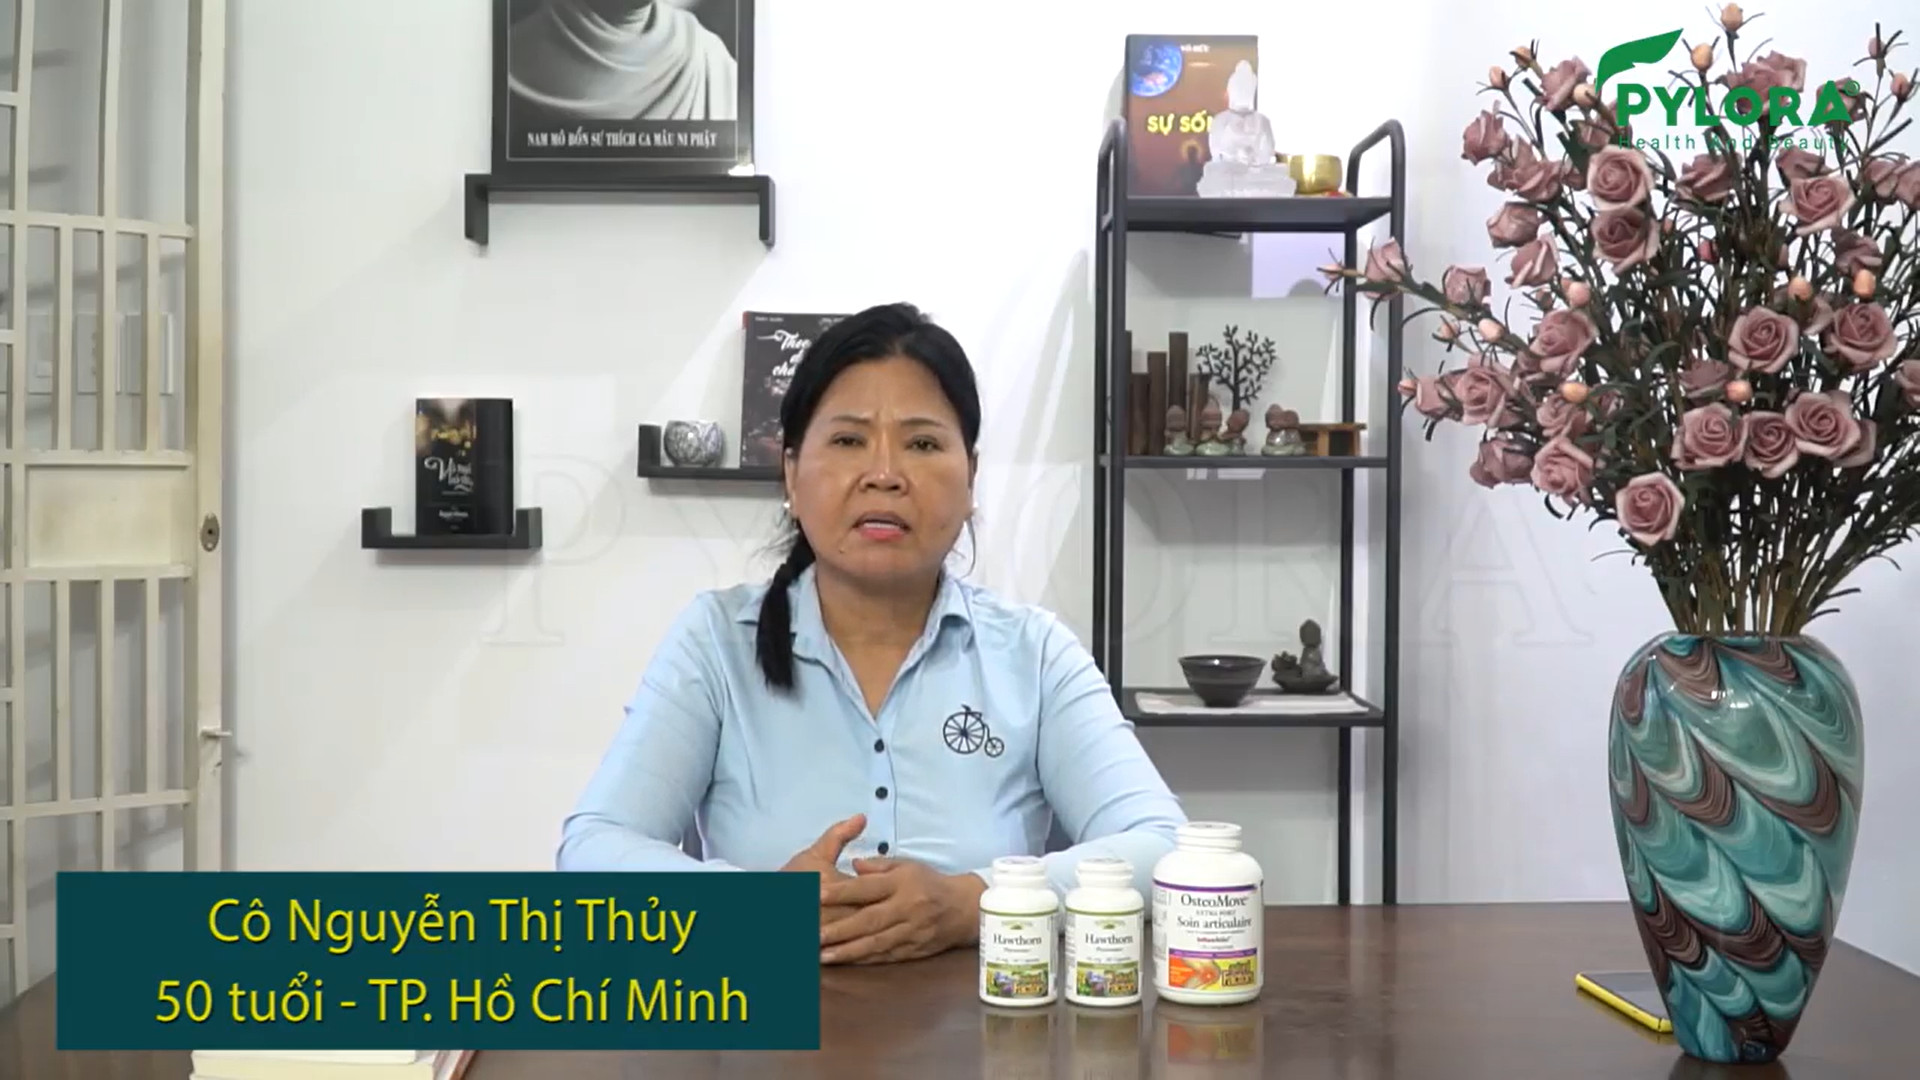 Chia sẻ của cô Nguyễn Thị Thủy về quá trình sử dụng bộ đôi dược thảo PyLoLo ngăn ngừa huyết áp thấp